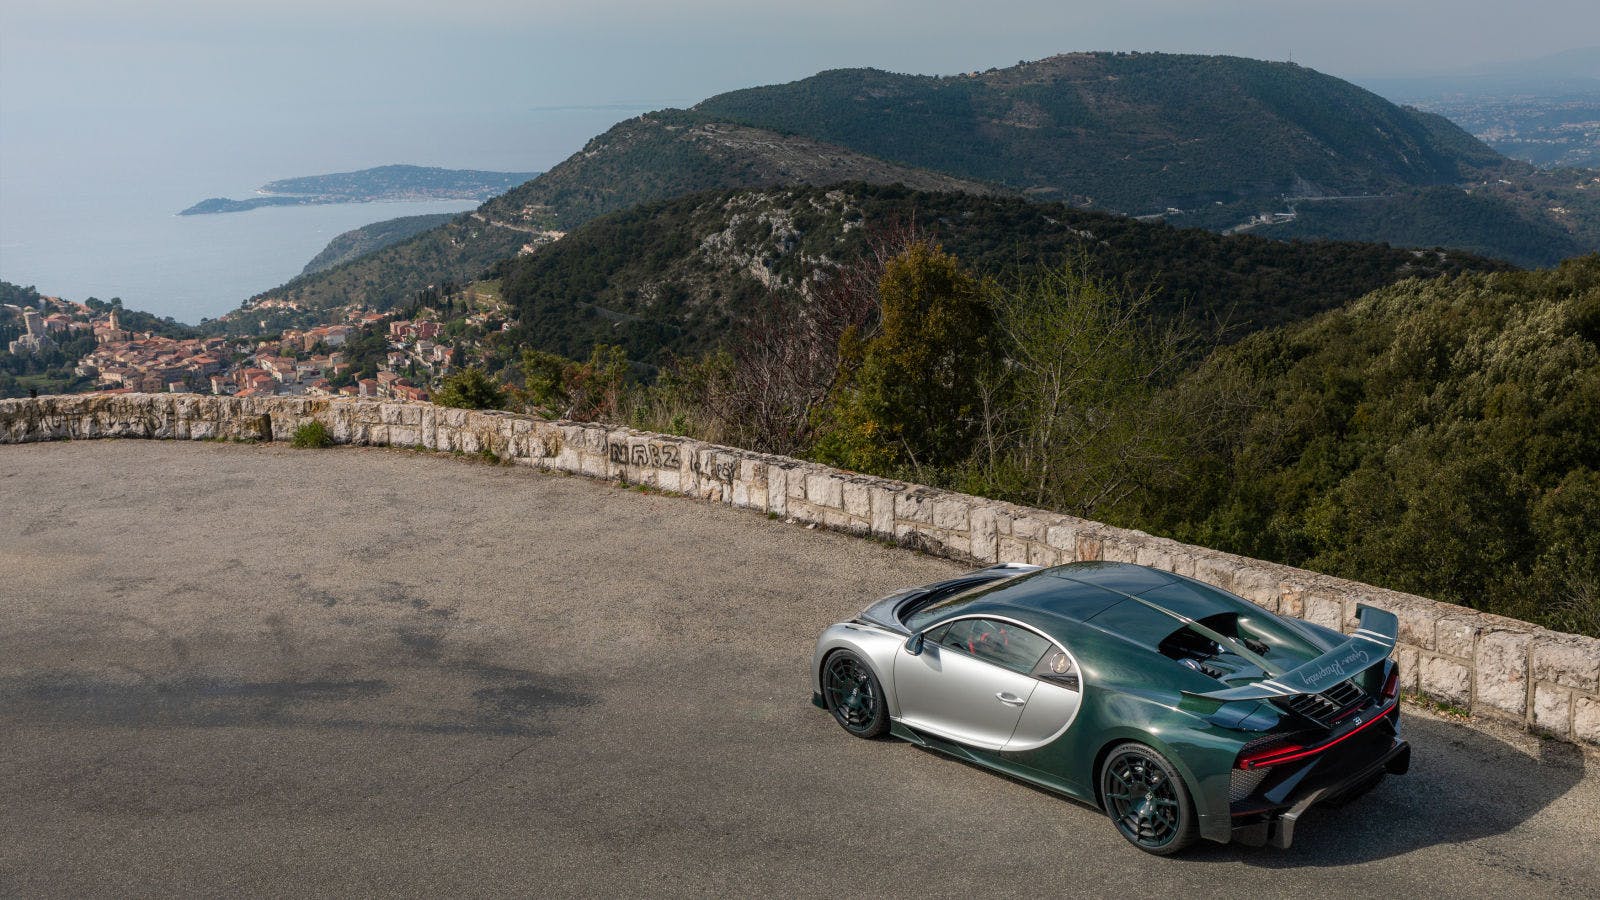 La Turbie, petite ville située au nord de la Principauté de Monaco surplombant la mer Méditerranée où Bugatti a rendu visite avec une Chiron Pur Sport unique - l’équivalent moderne de la création d’Ettore, la Bugatti la plus agile à ce jour.